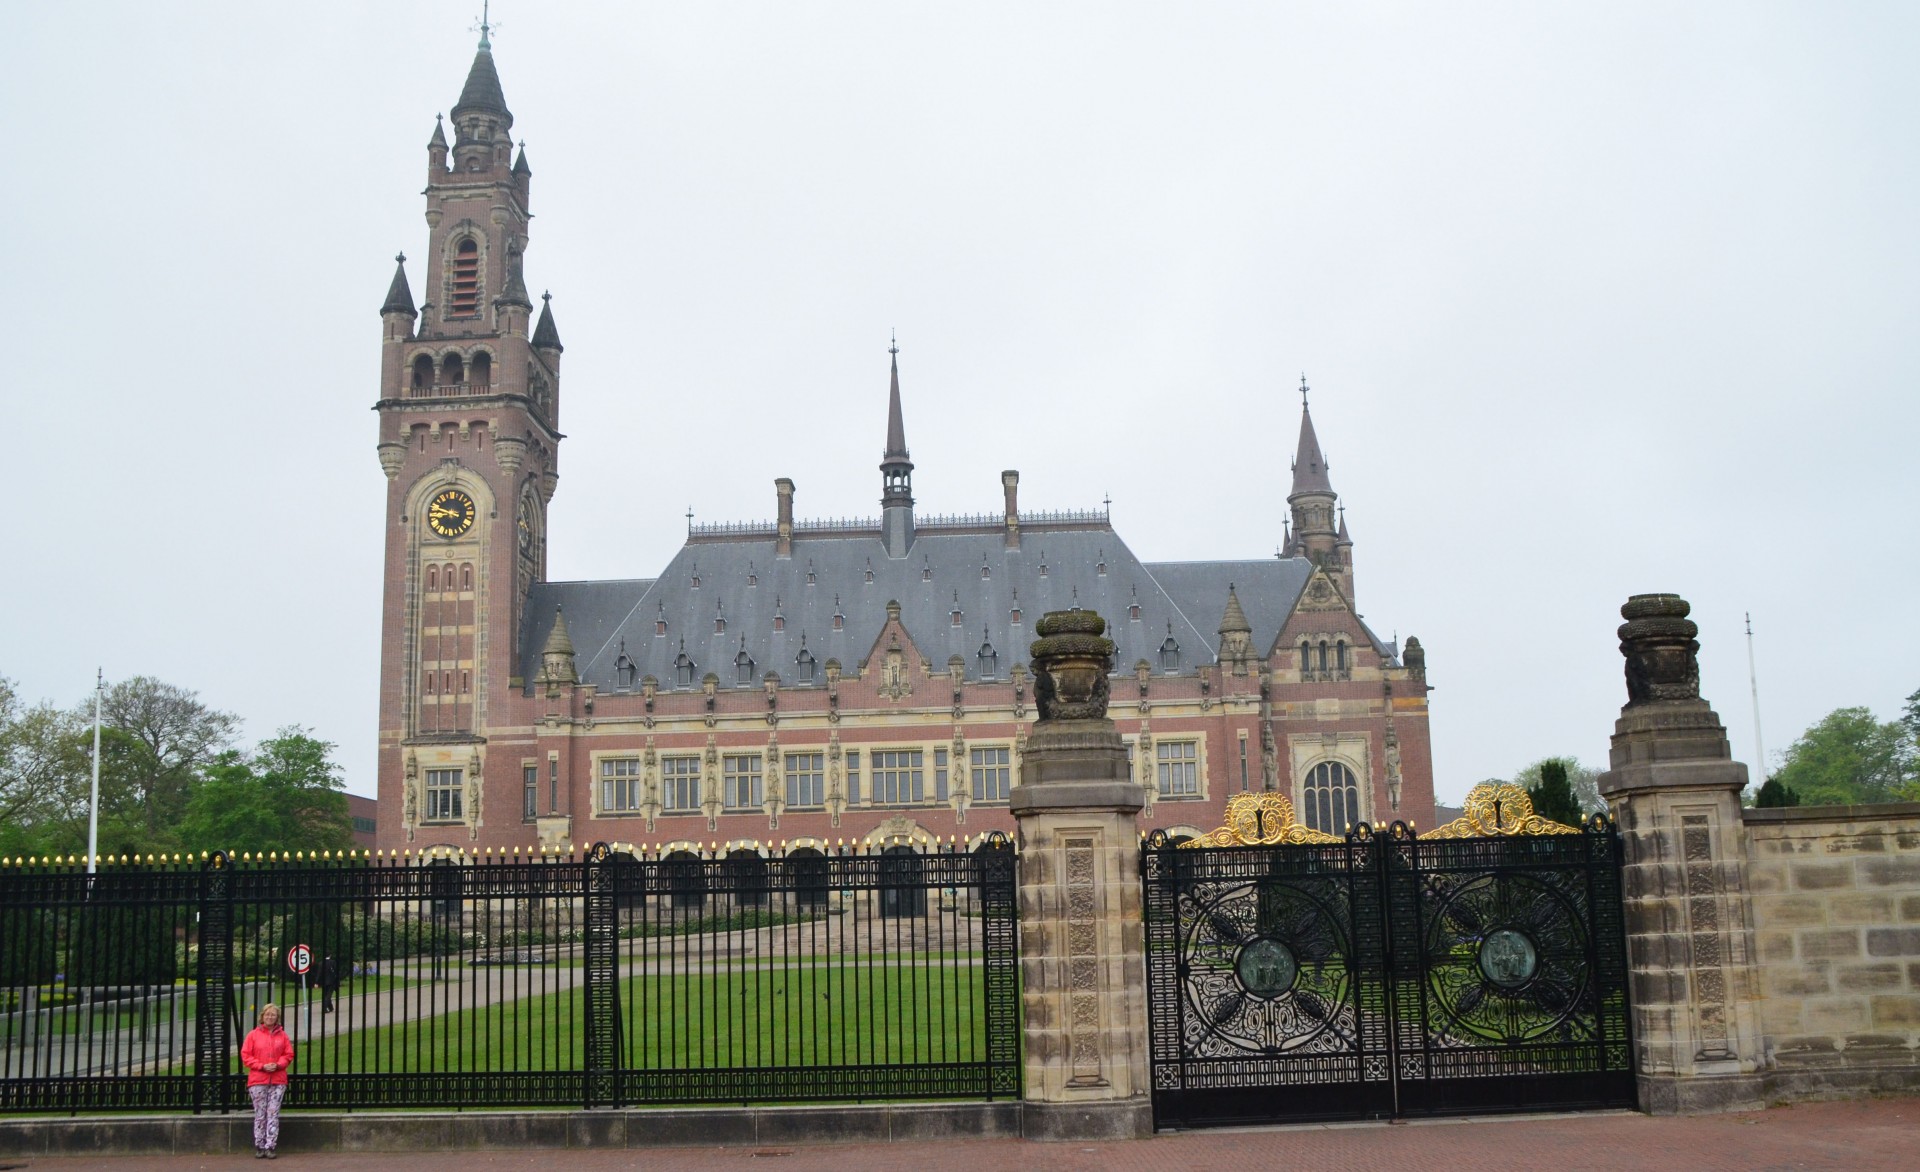 Alison & the Palais du Justice, The Hague